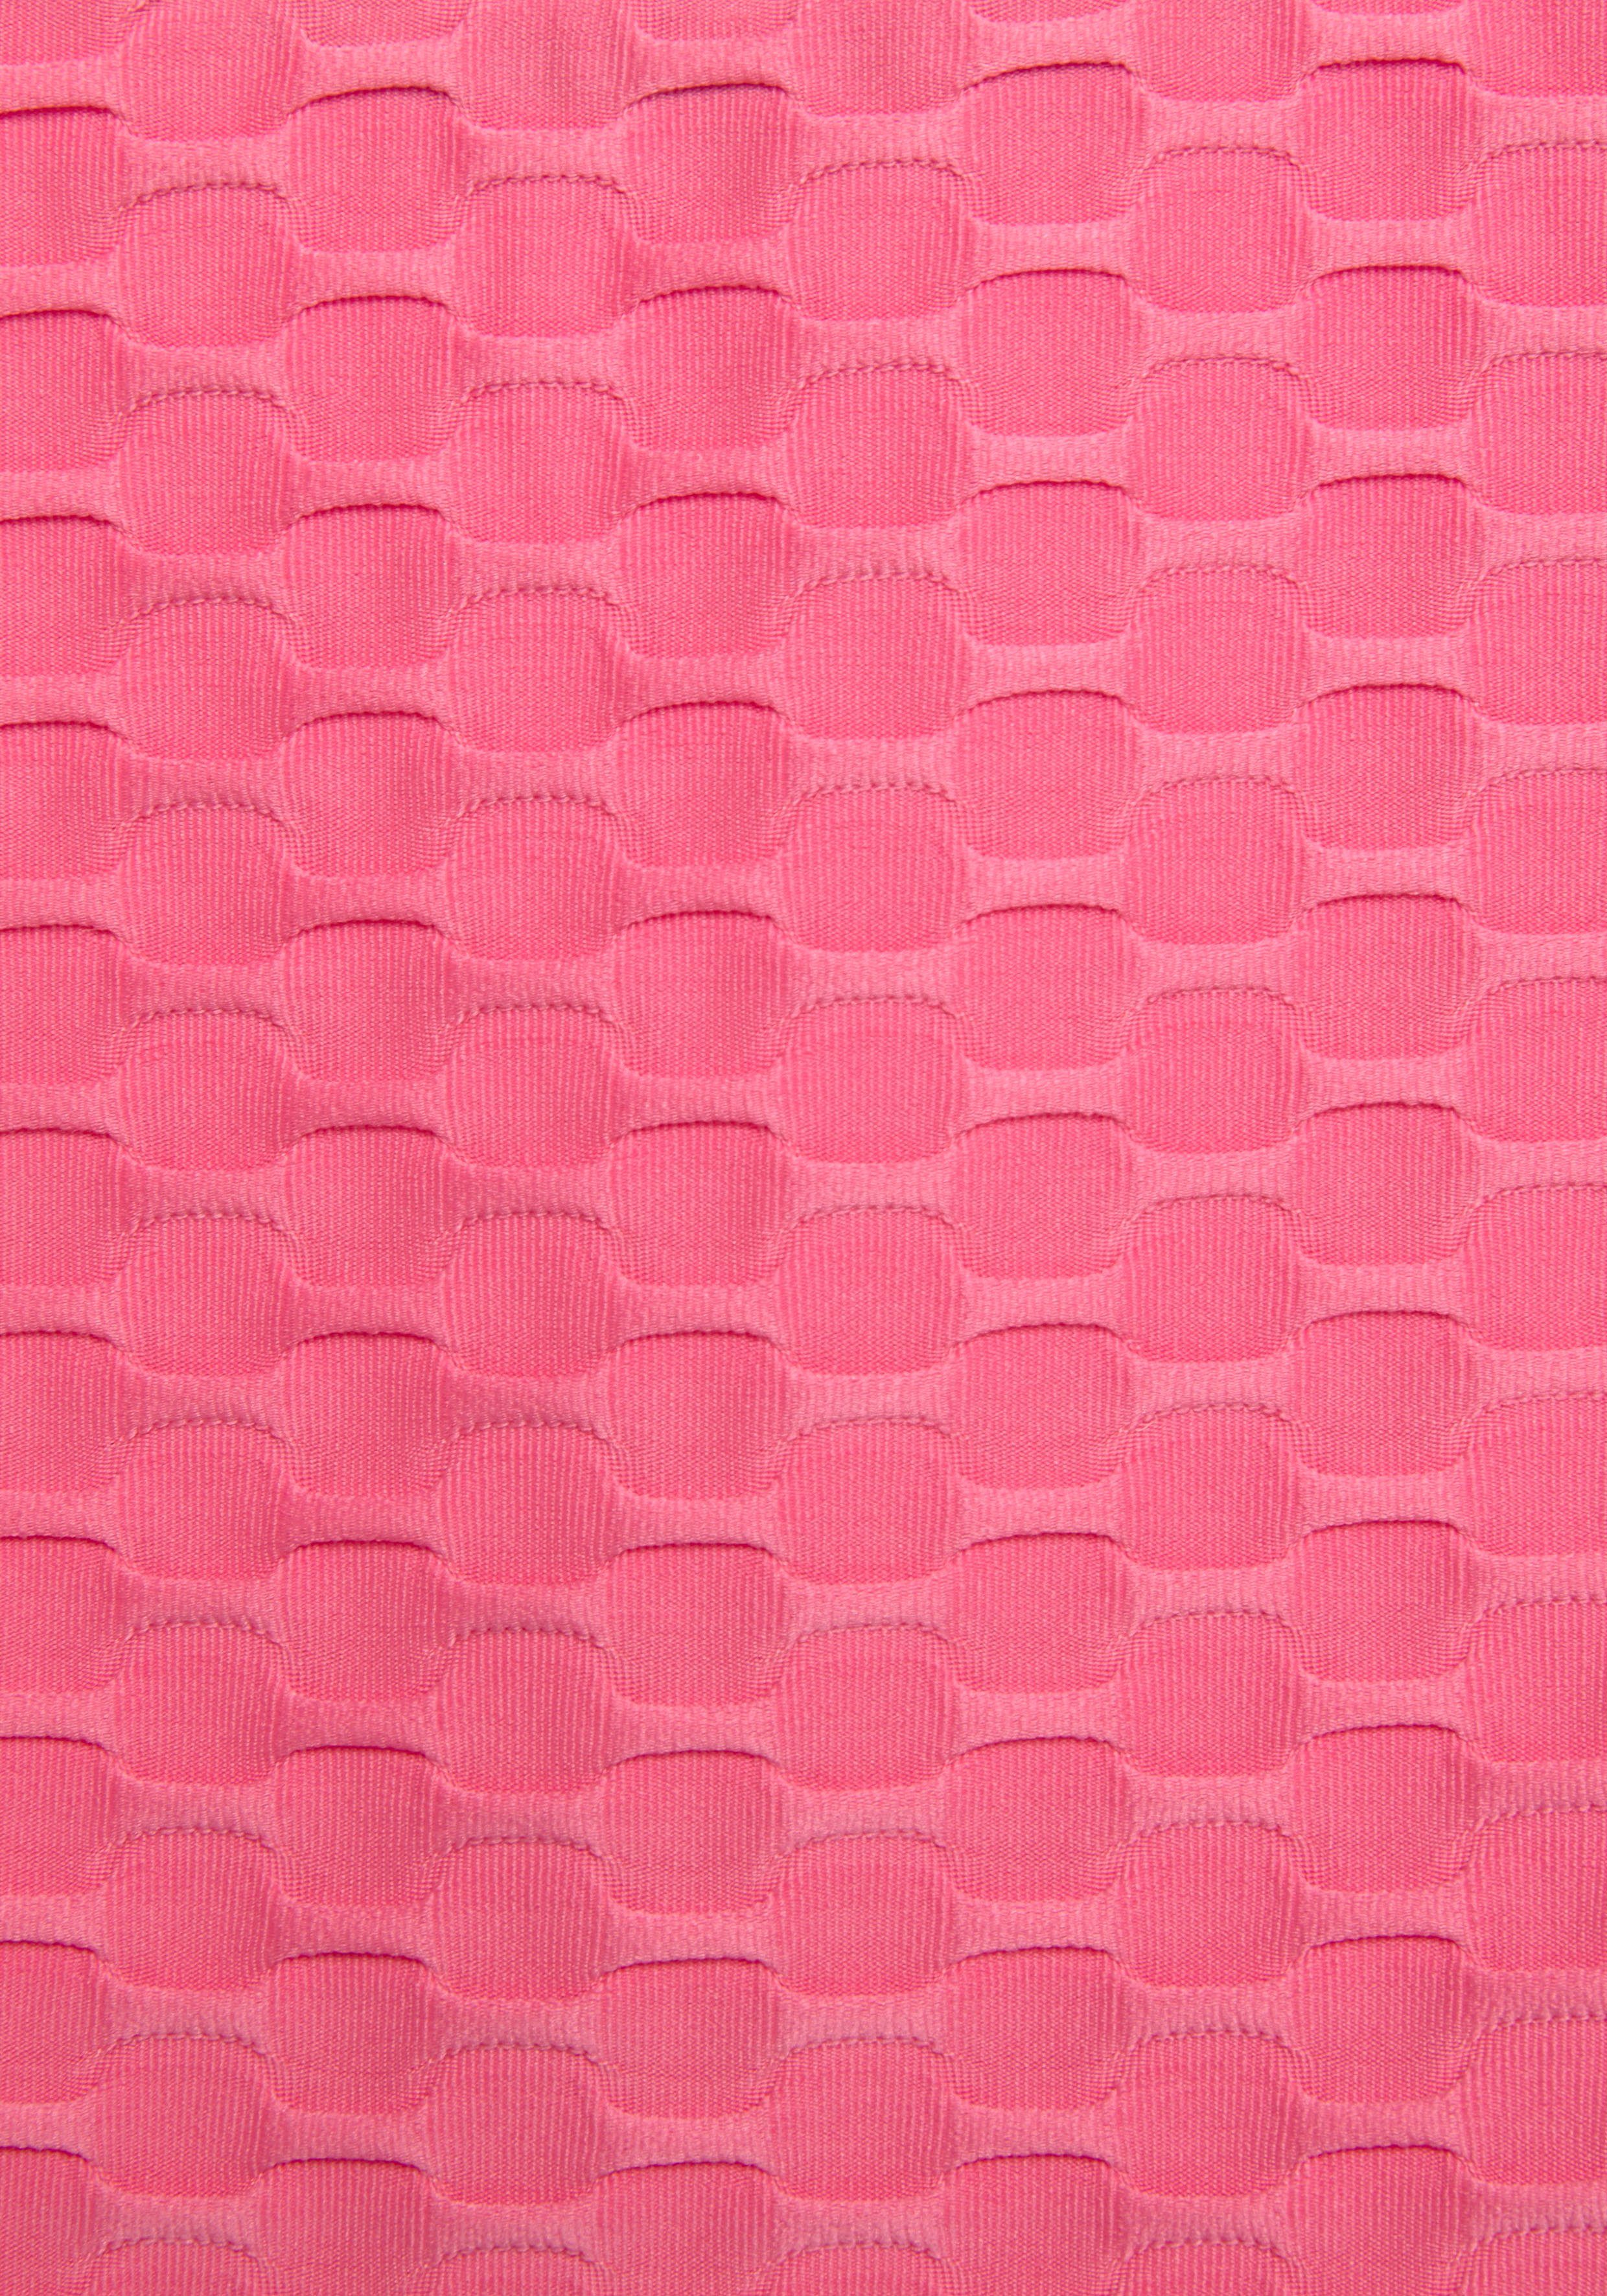 Funktionsshirt Wabendesign und mit pink Bench. Mesheinsatz